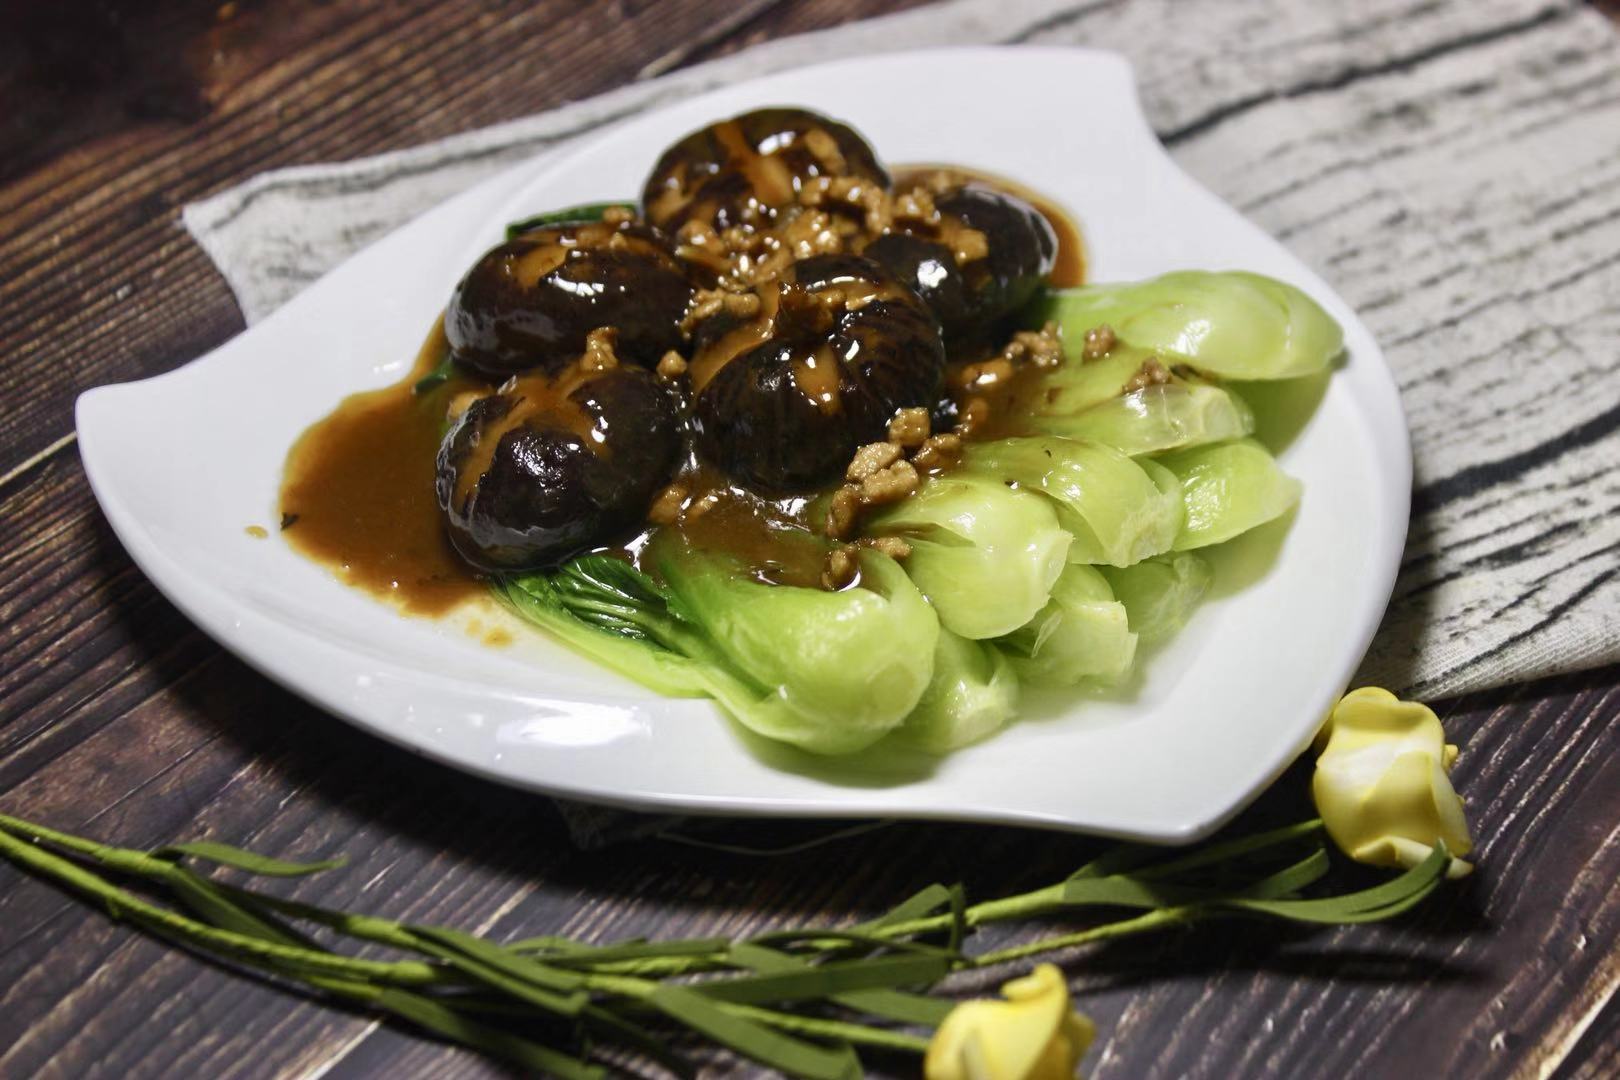 嫩滑的香菇搭配上海青,美味无法挡,营养又健康